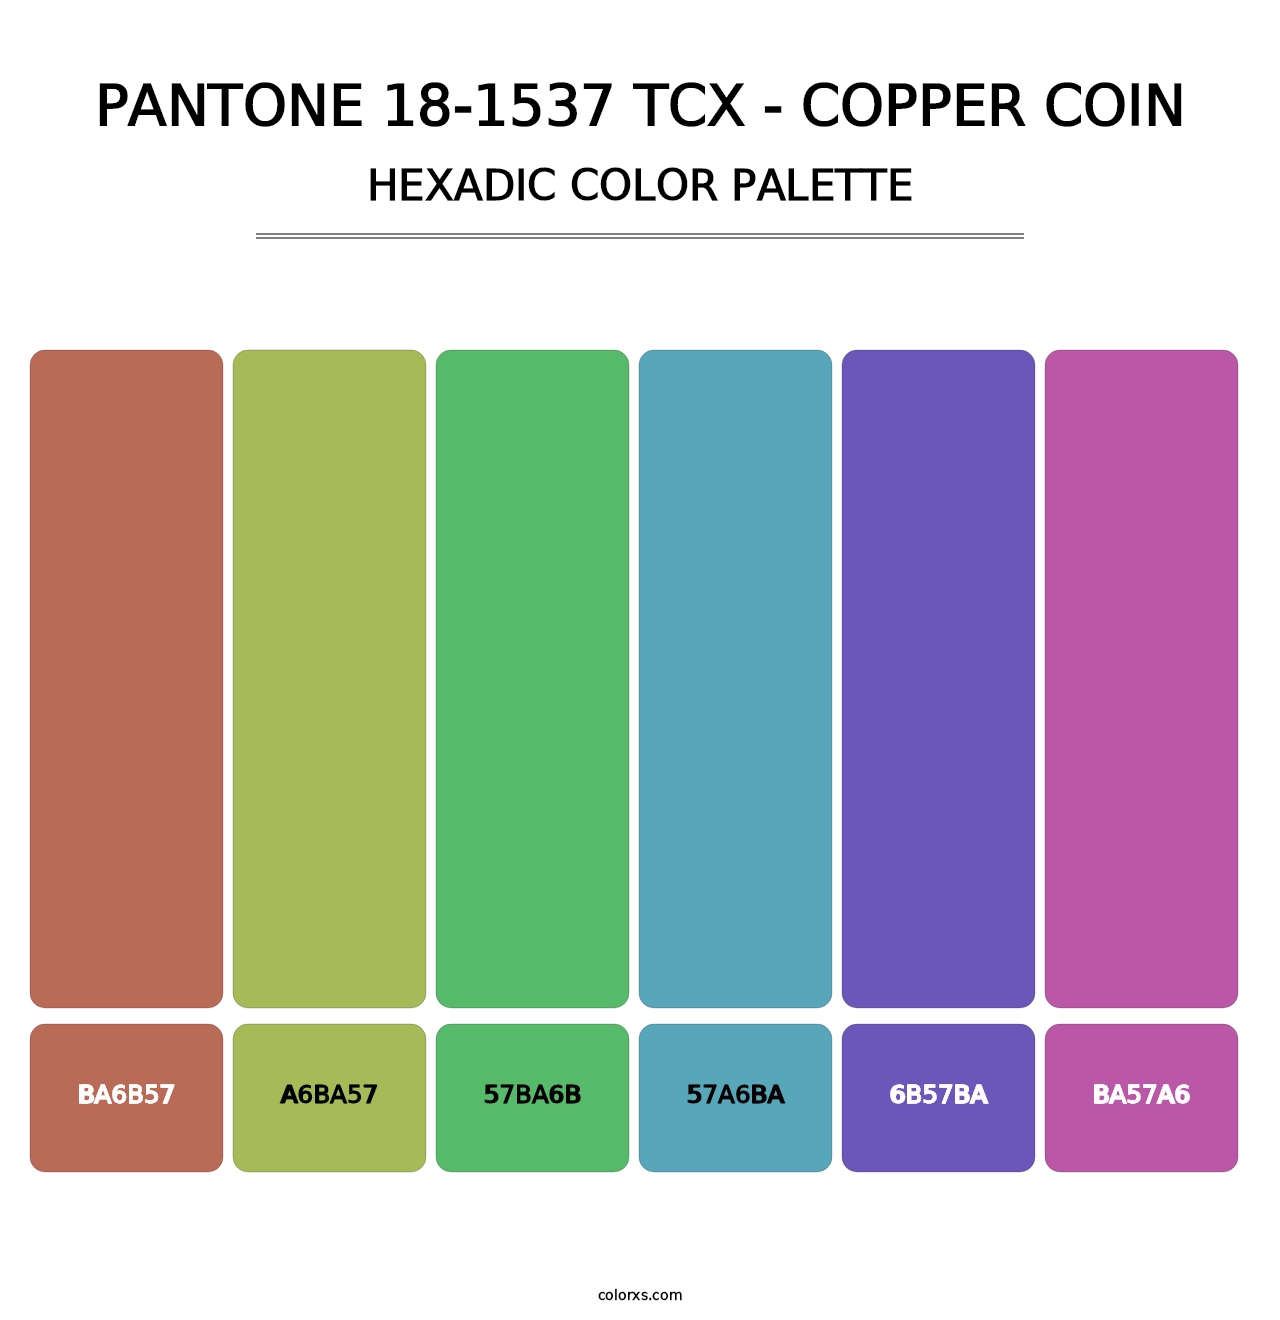 PANTONE 18-1537 TCX - Copper Coin - Hexadic Color Palette